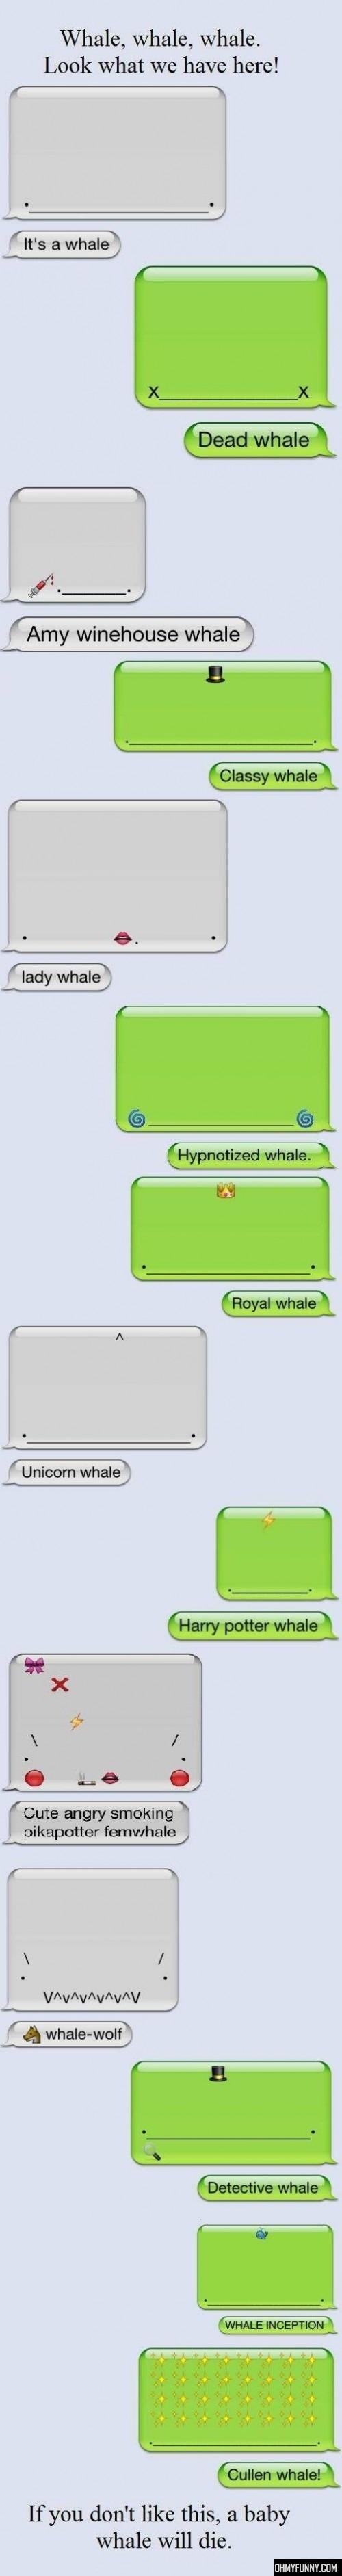 Whales, whales everywhere - meme